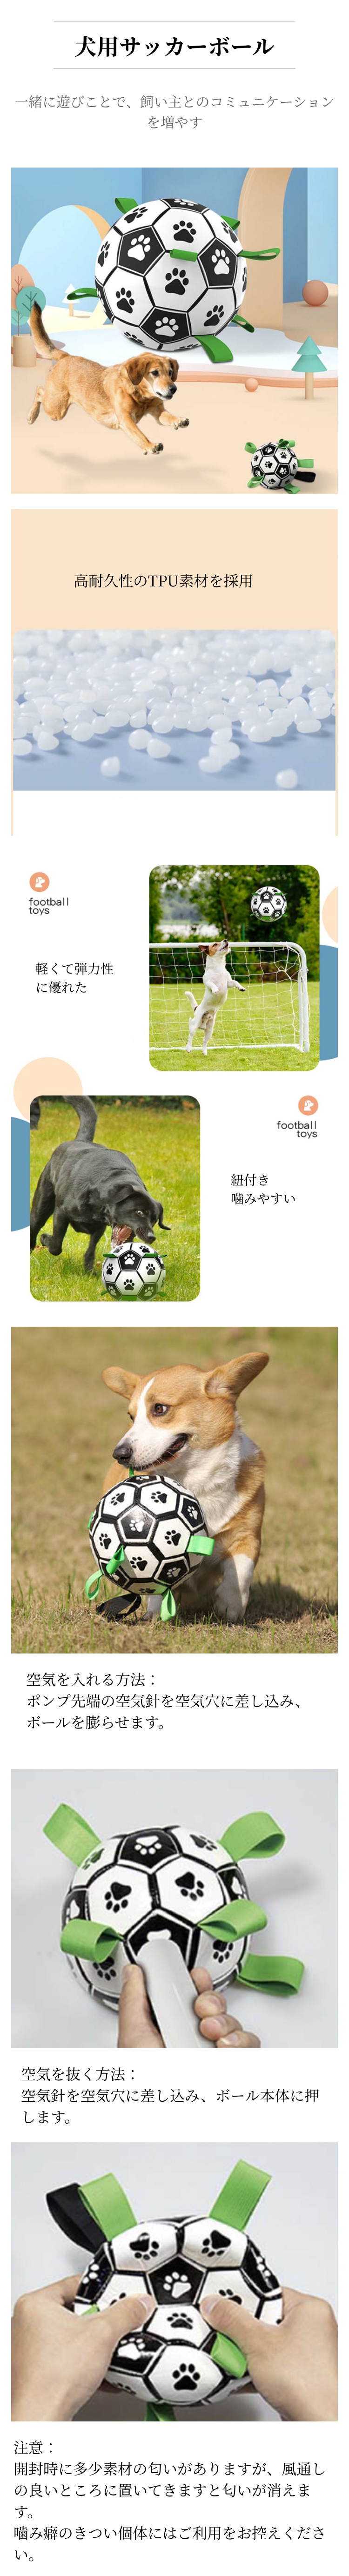 犬用サッカーボール.png